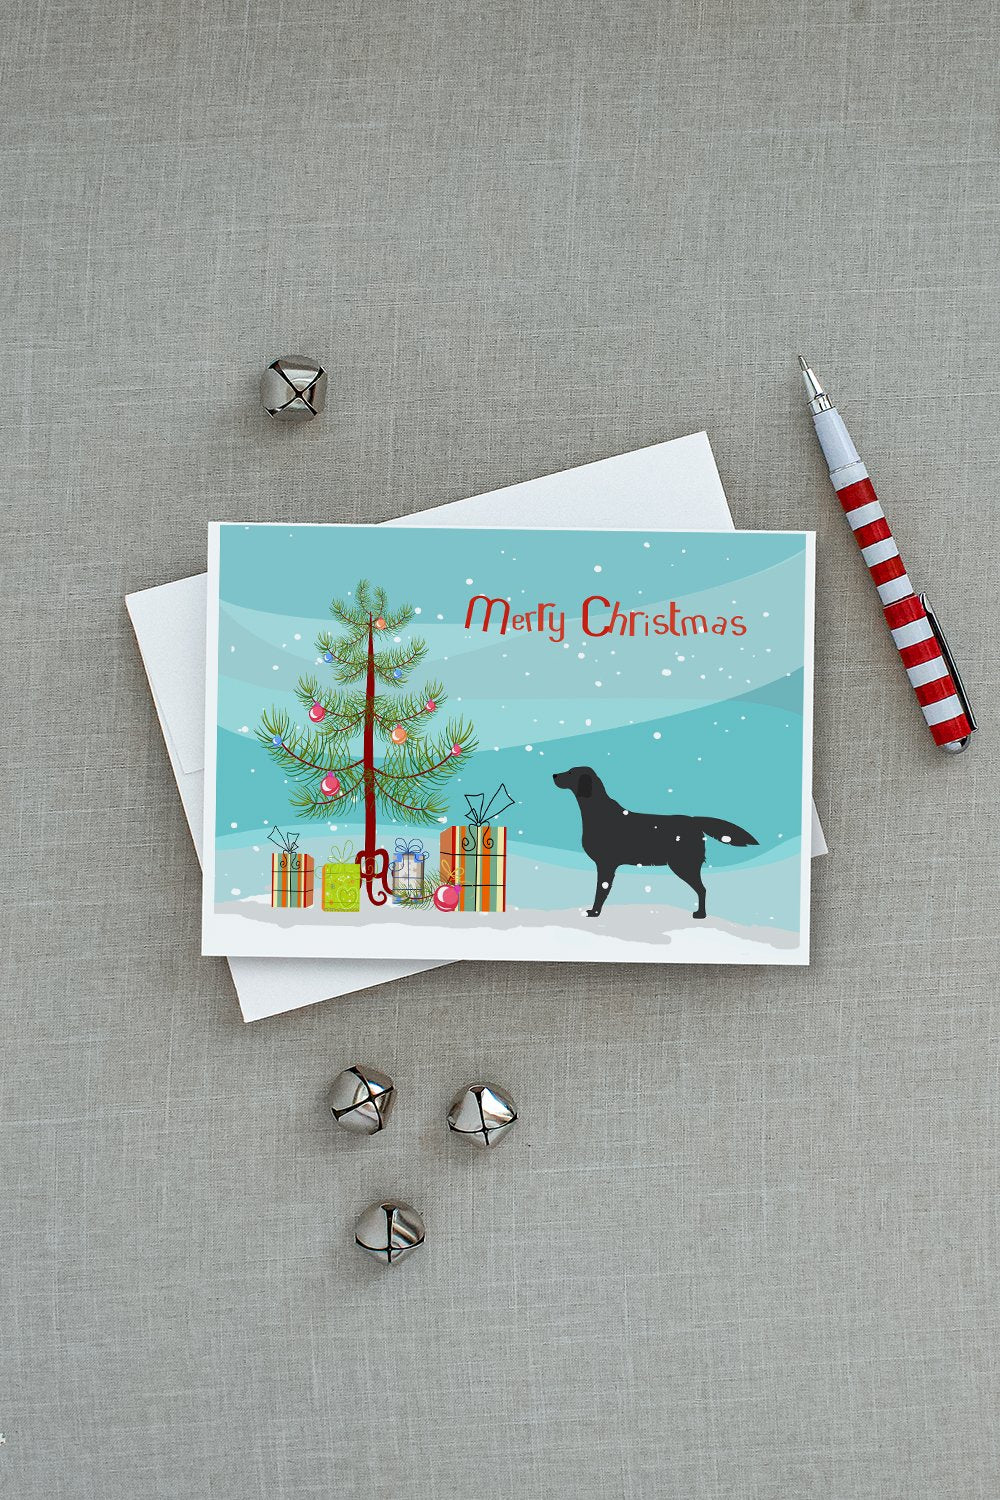 Black Labrador Retriever Merry Christmas Tree Greeting Cards and Envelopes Pack of 8 - the-store.com